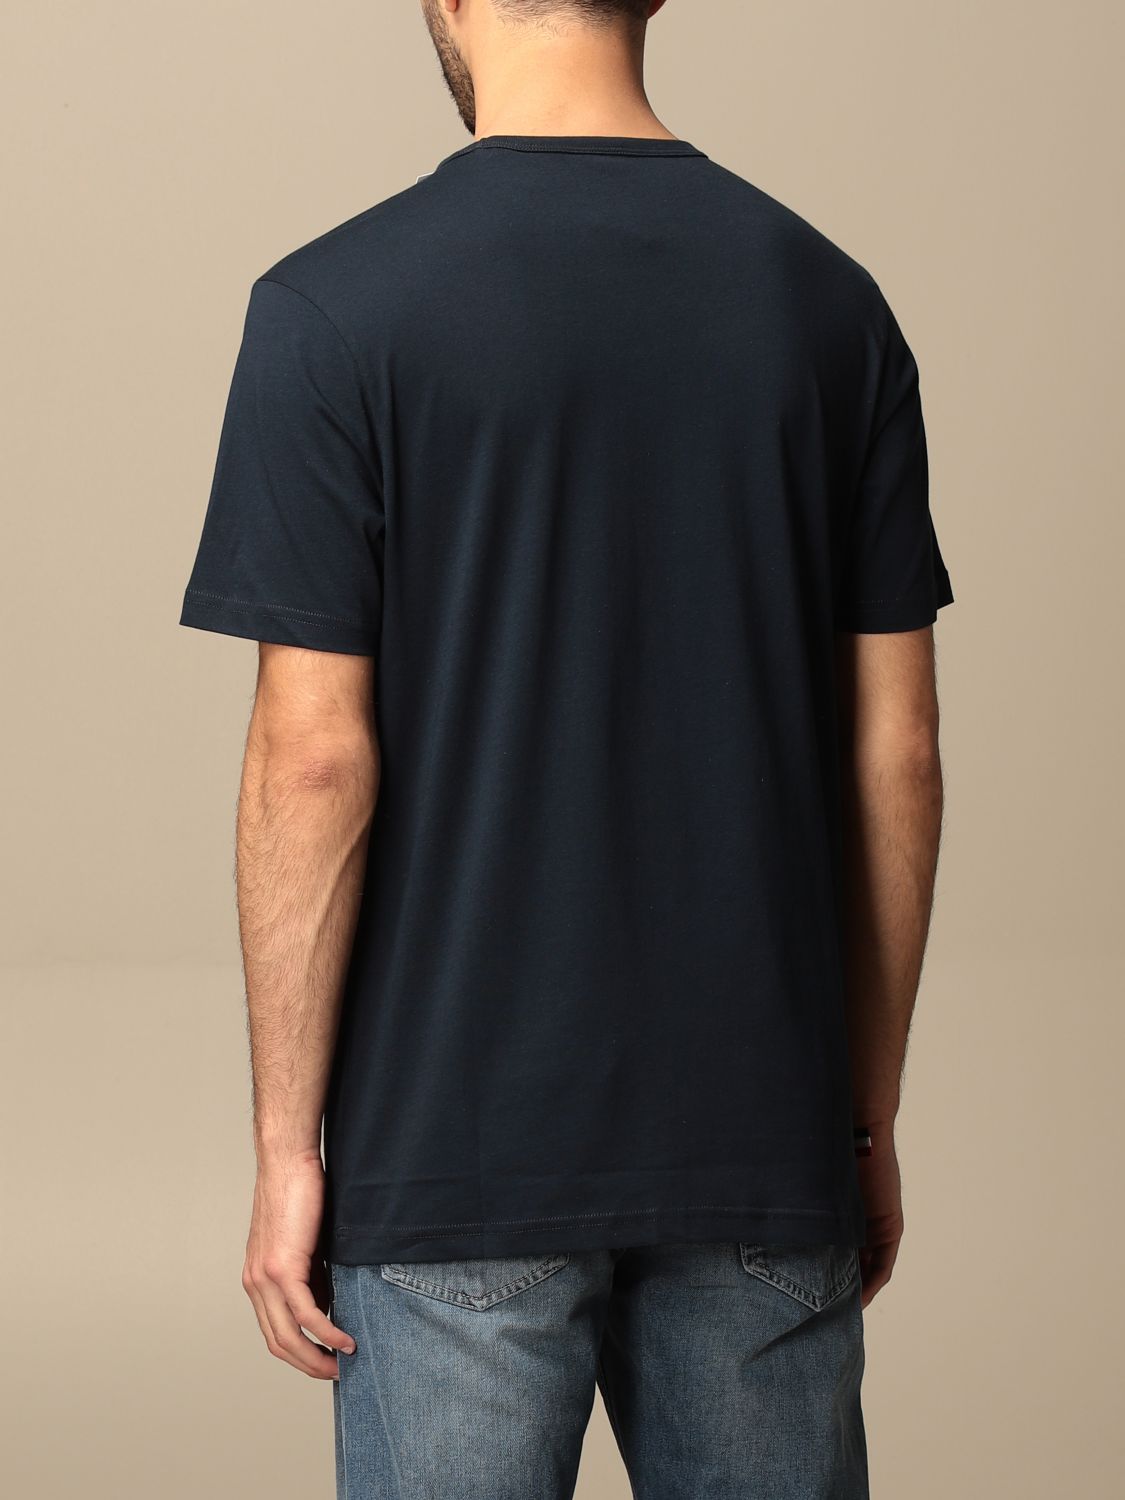 Camiseta Rossignol: Camiseta hombre Rossignol azul oscuro 2